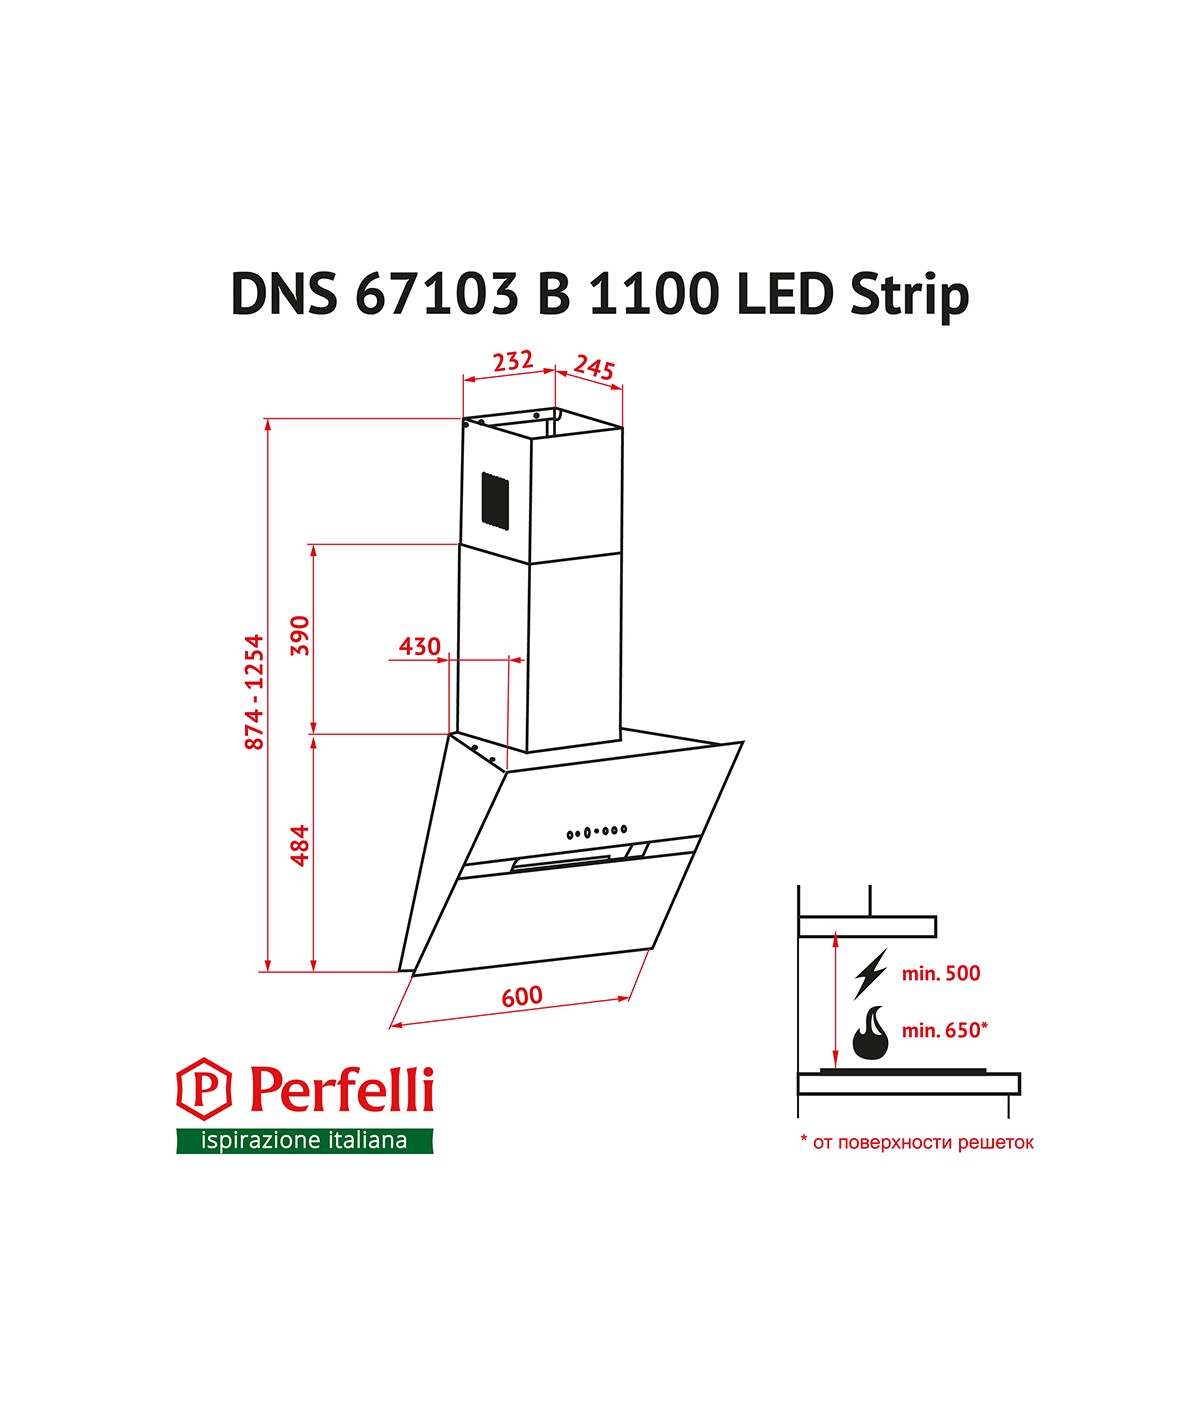 Perfelli DNS 67103 B 1100 BL LED Strip Габаритные размеры